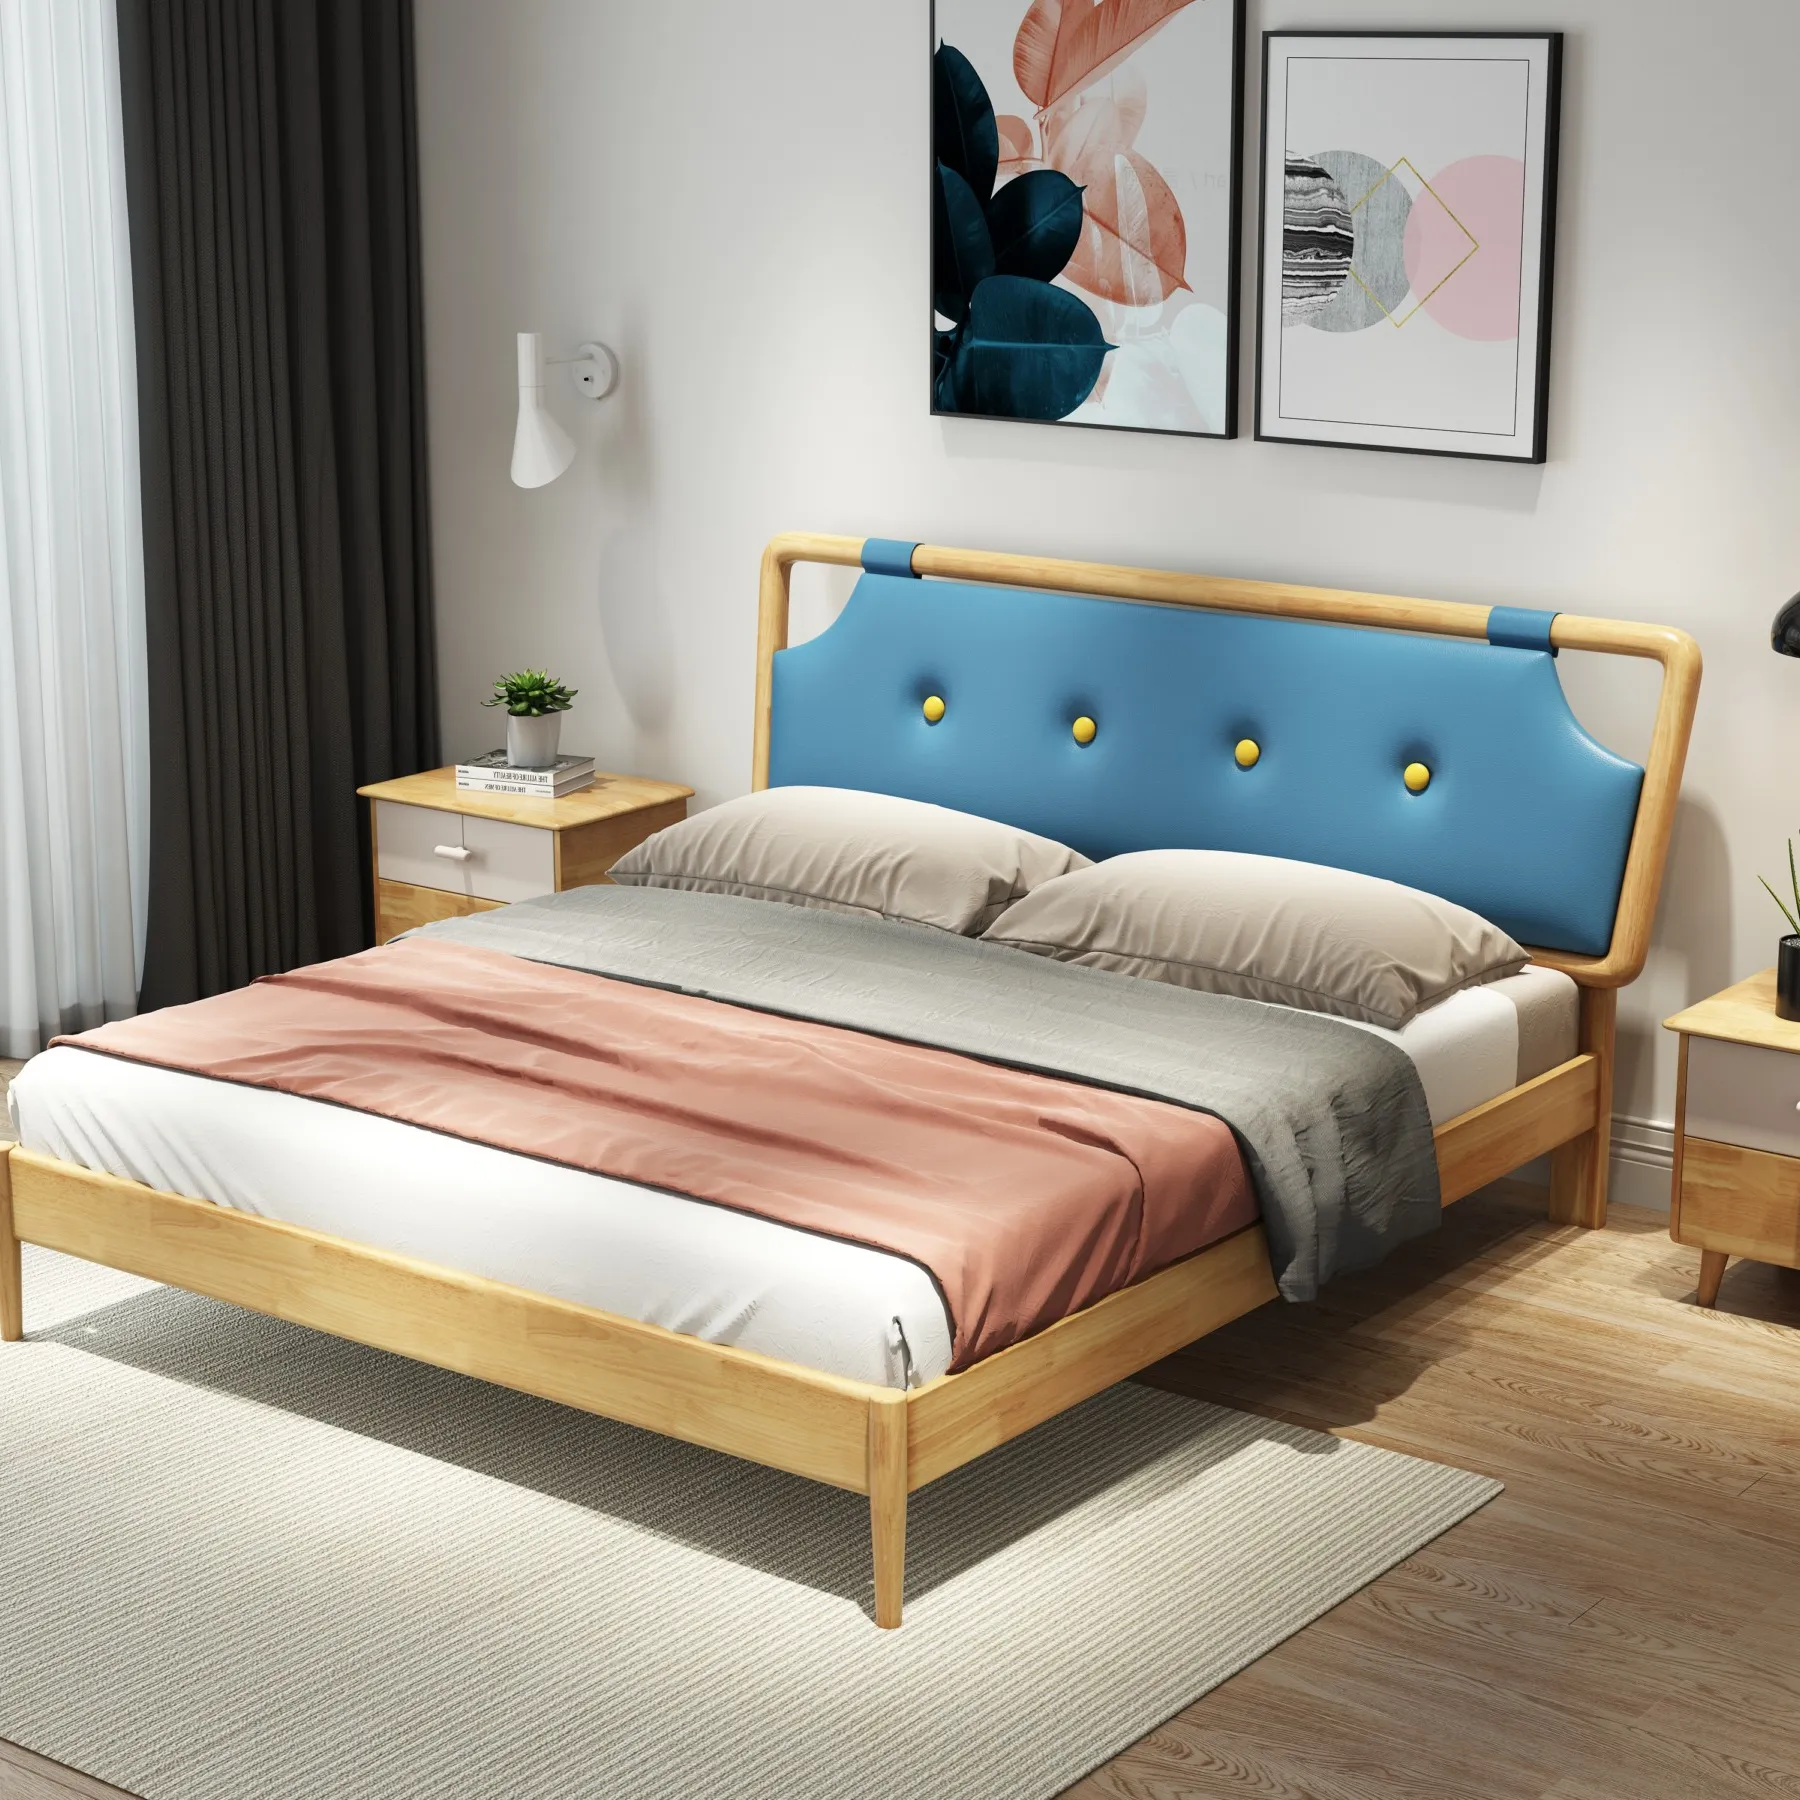 Usine de meubles Foshan nordique derniere conception de meubles de chambre a coucher en bois massif